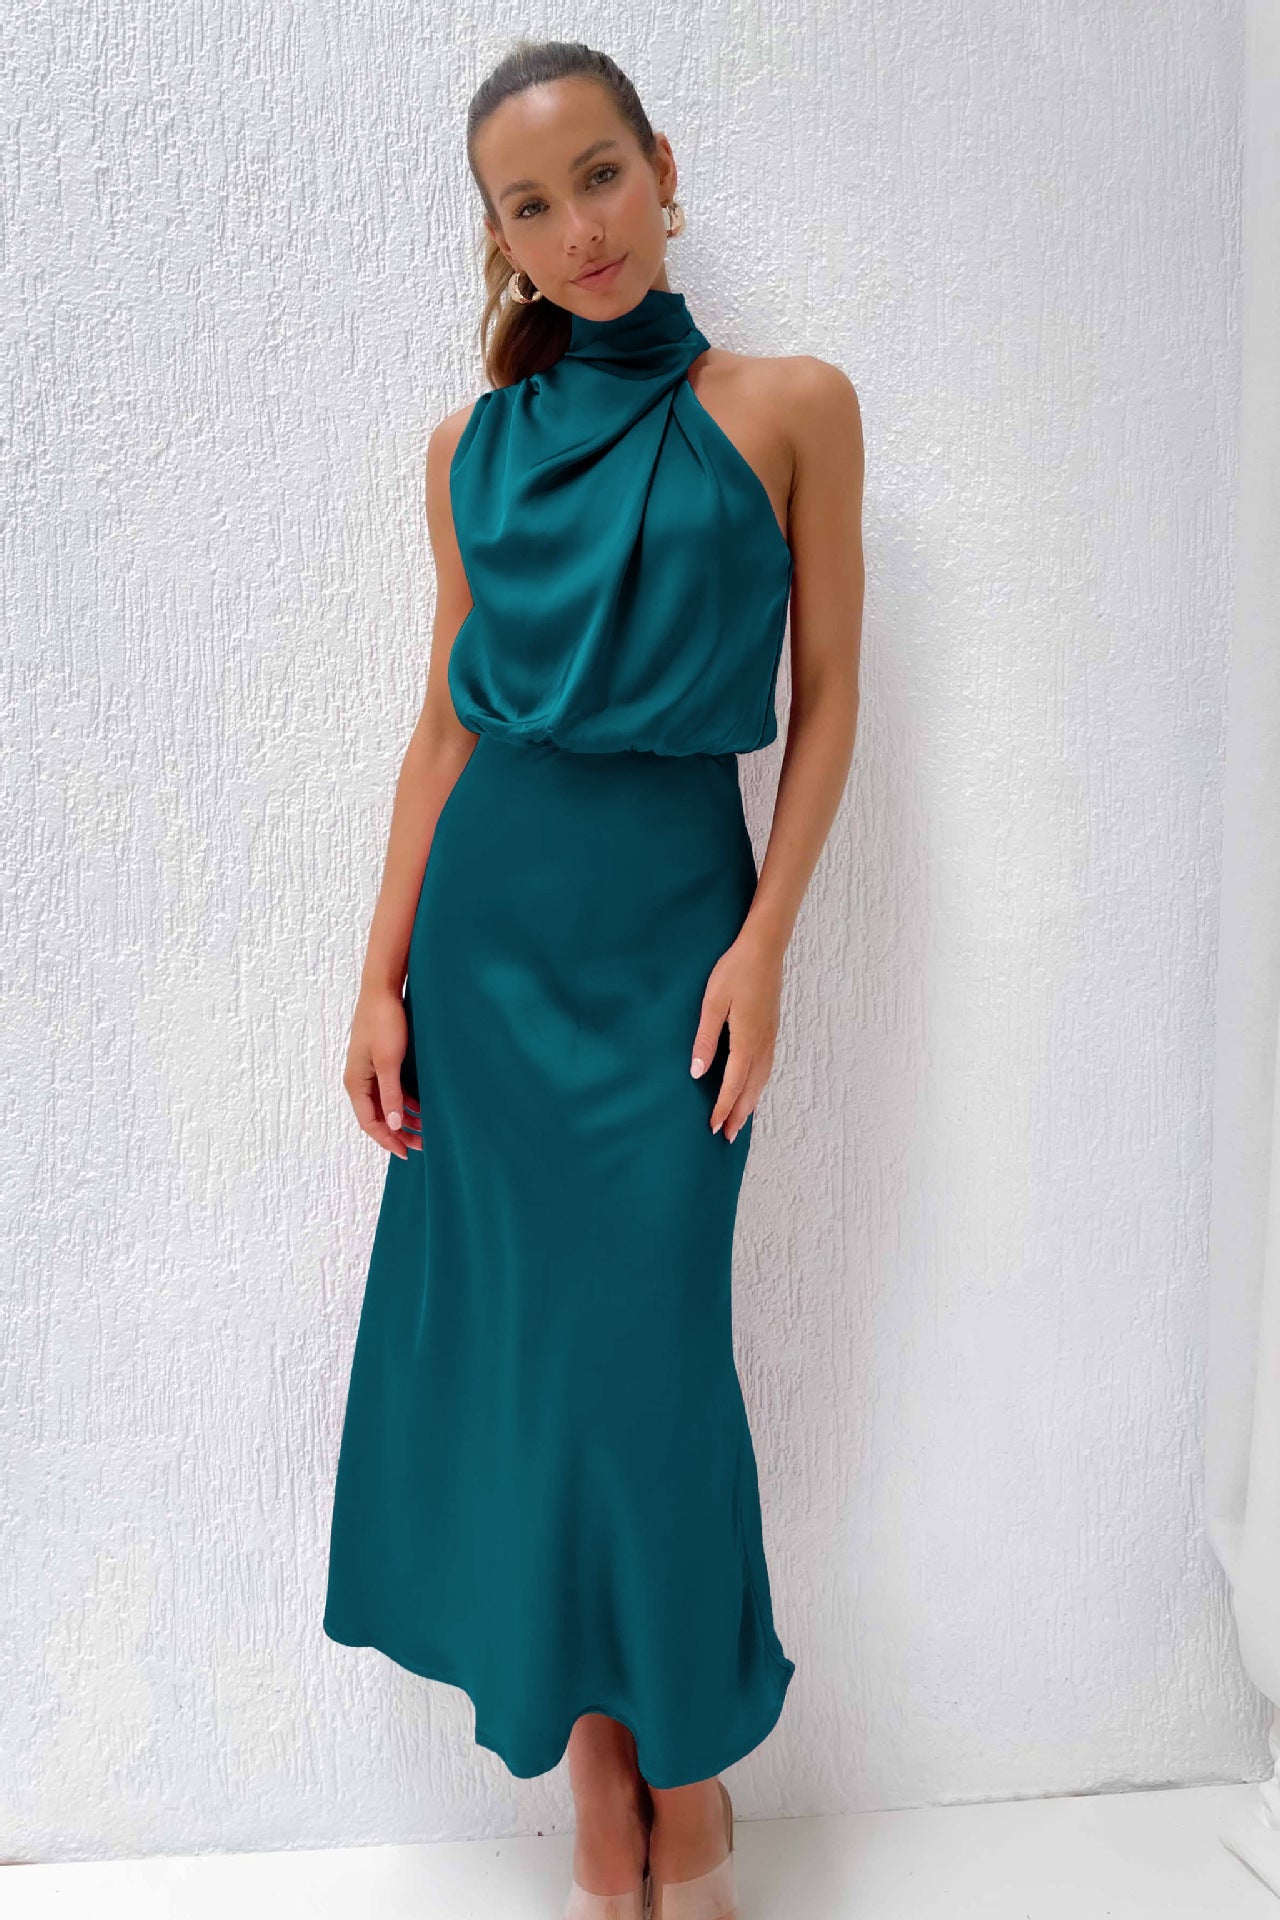 Sisakphoto™-Stylish and elegant satin sleeveless dress